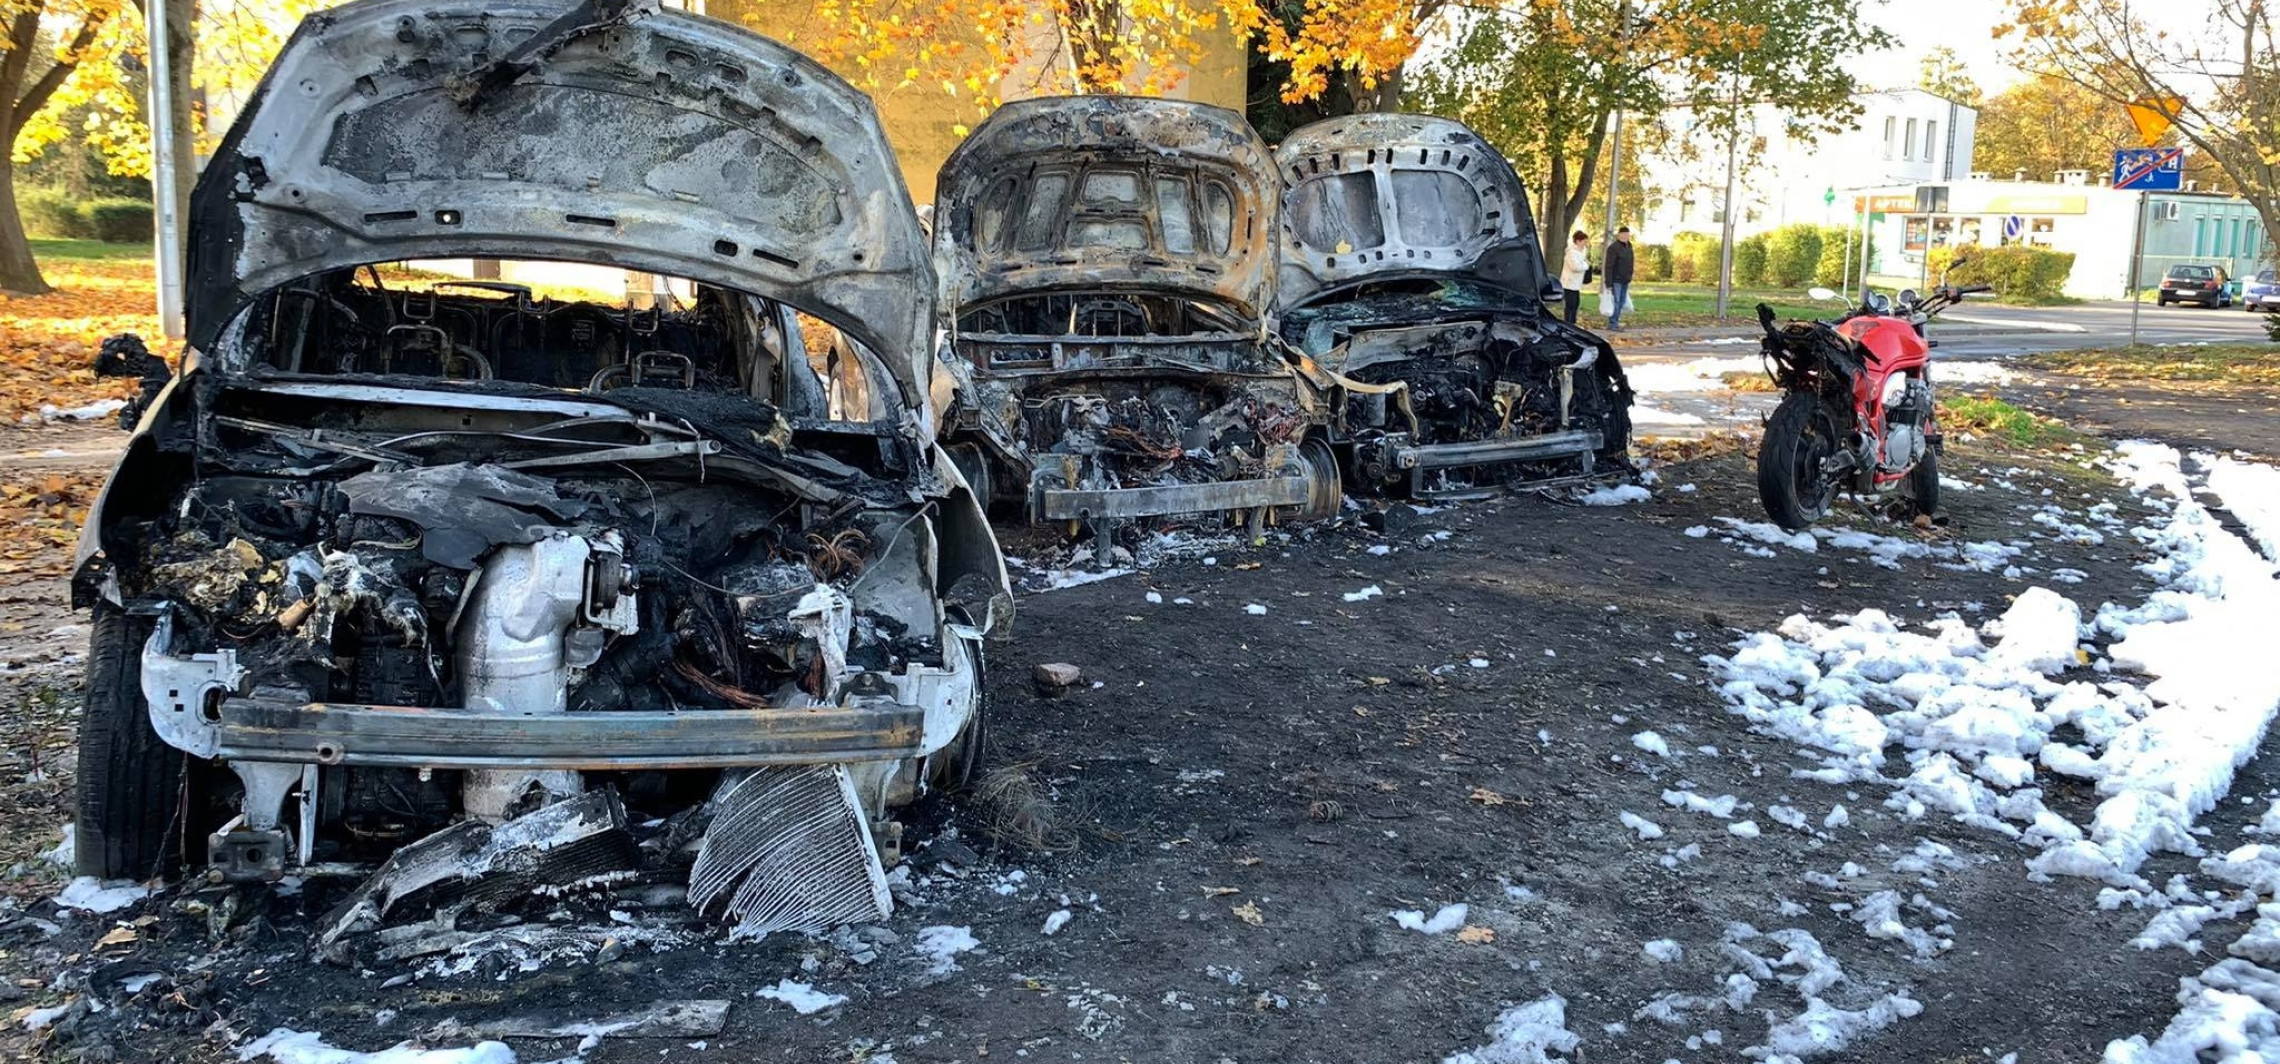 Janikowo - W nocy w Janikowie doszczętnie spłonęło kilka aut